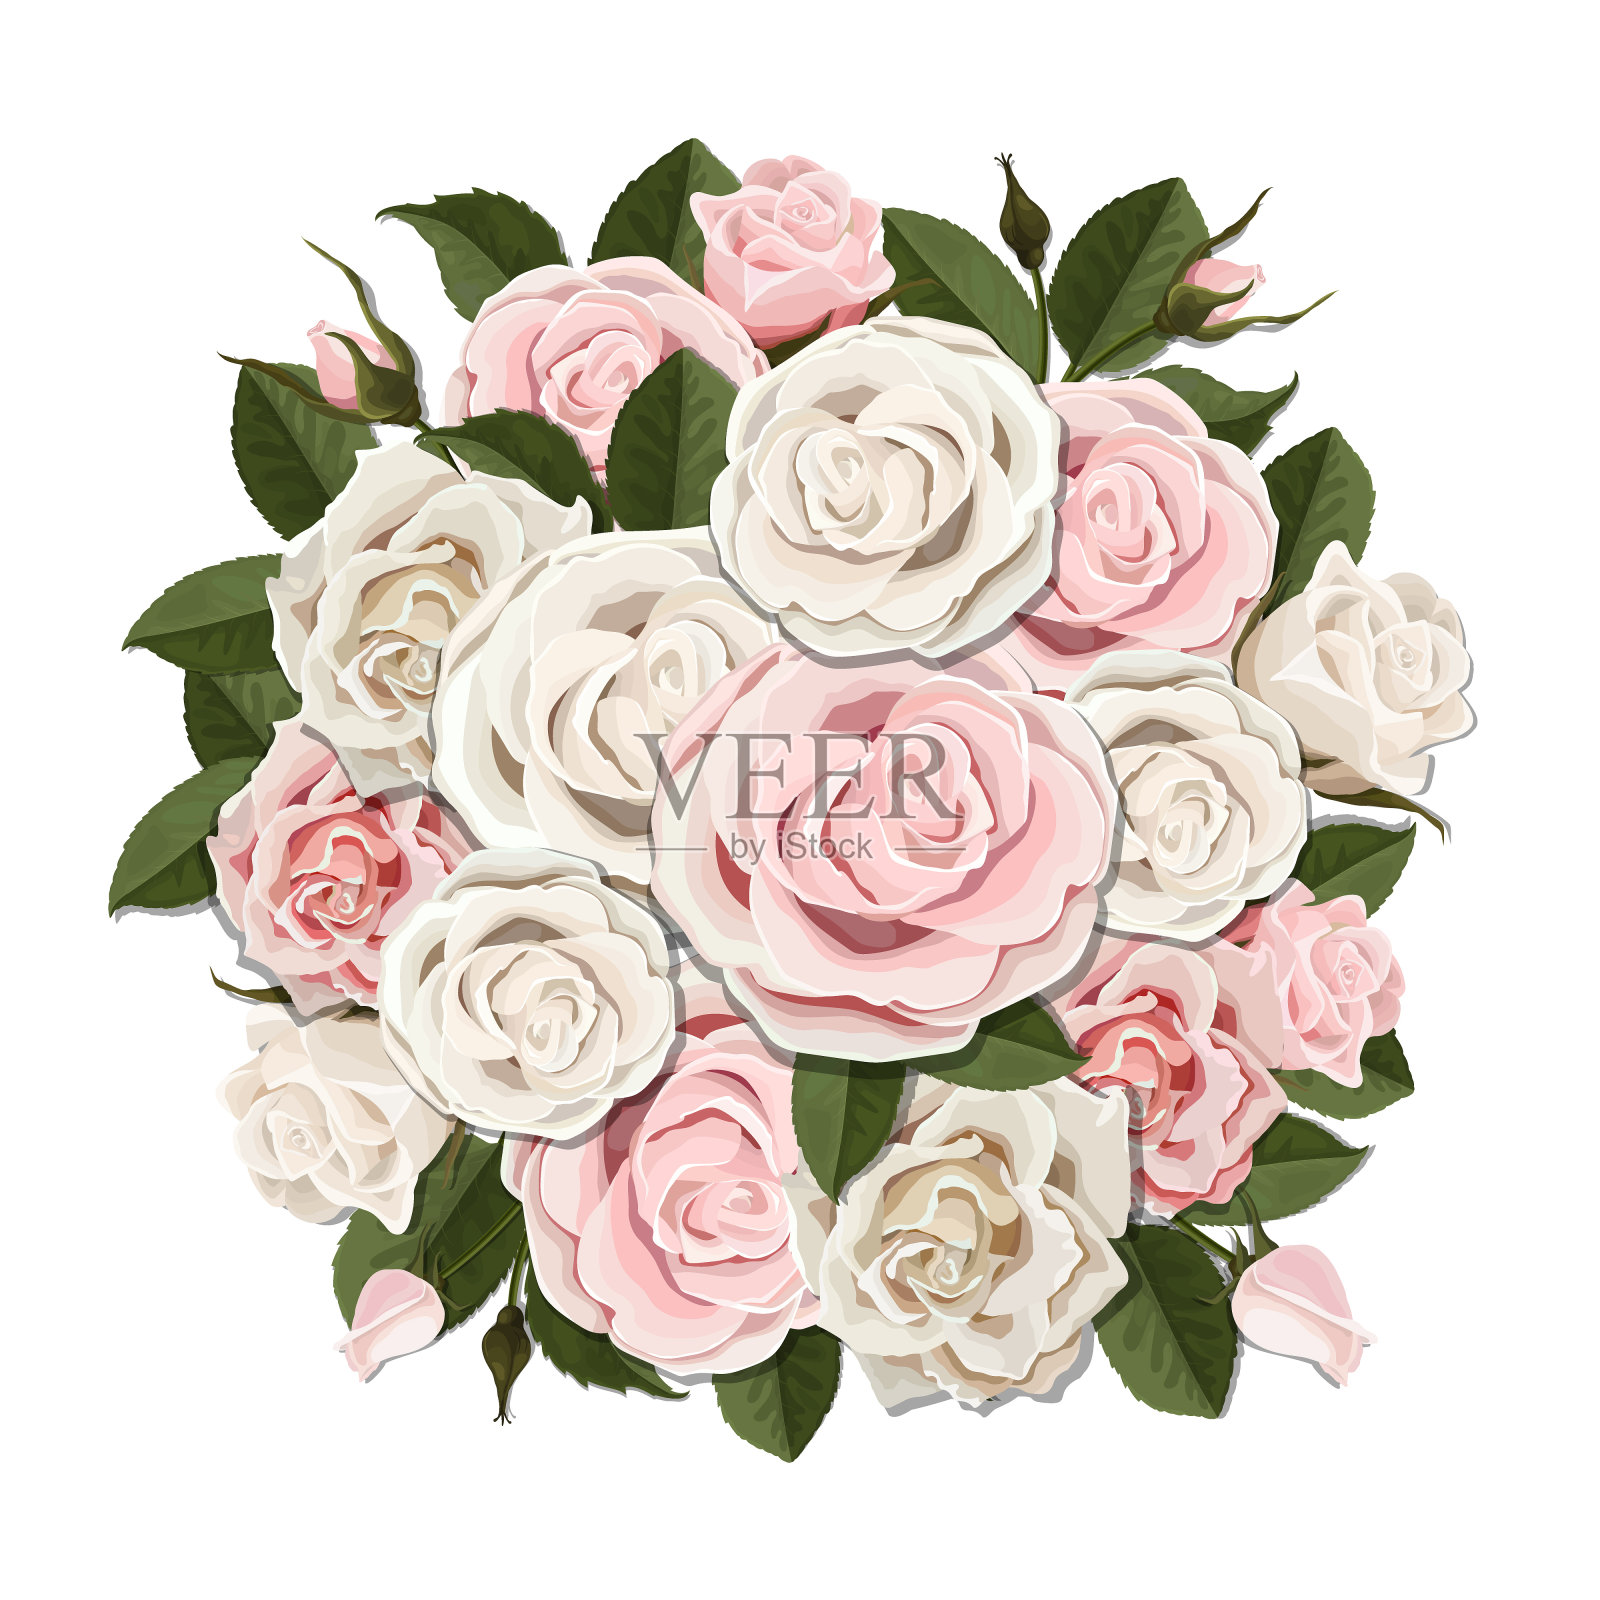 白色和粉红色的玫瑰花束插画图片素材